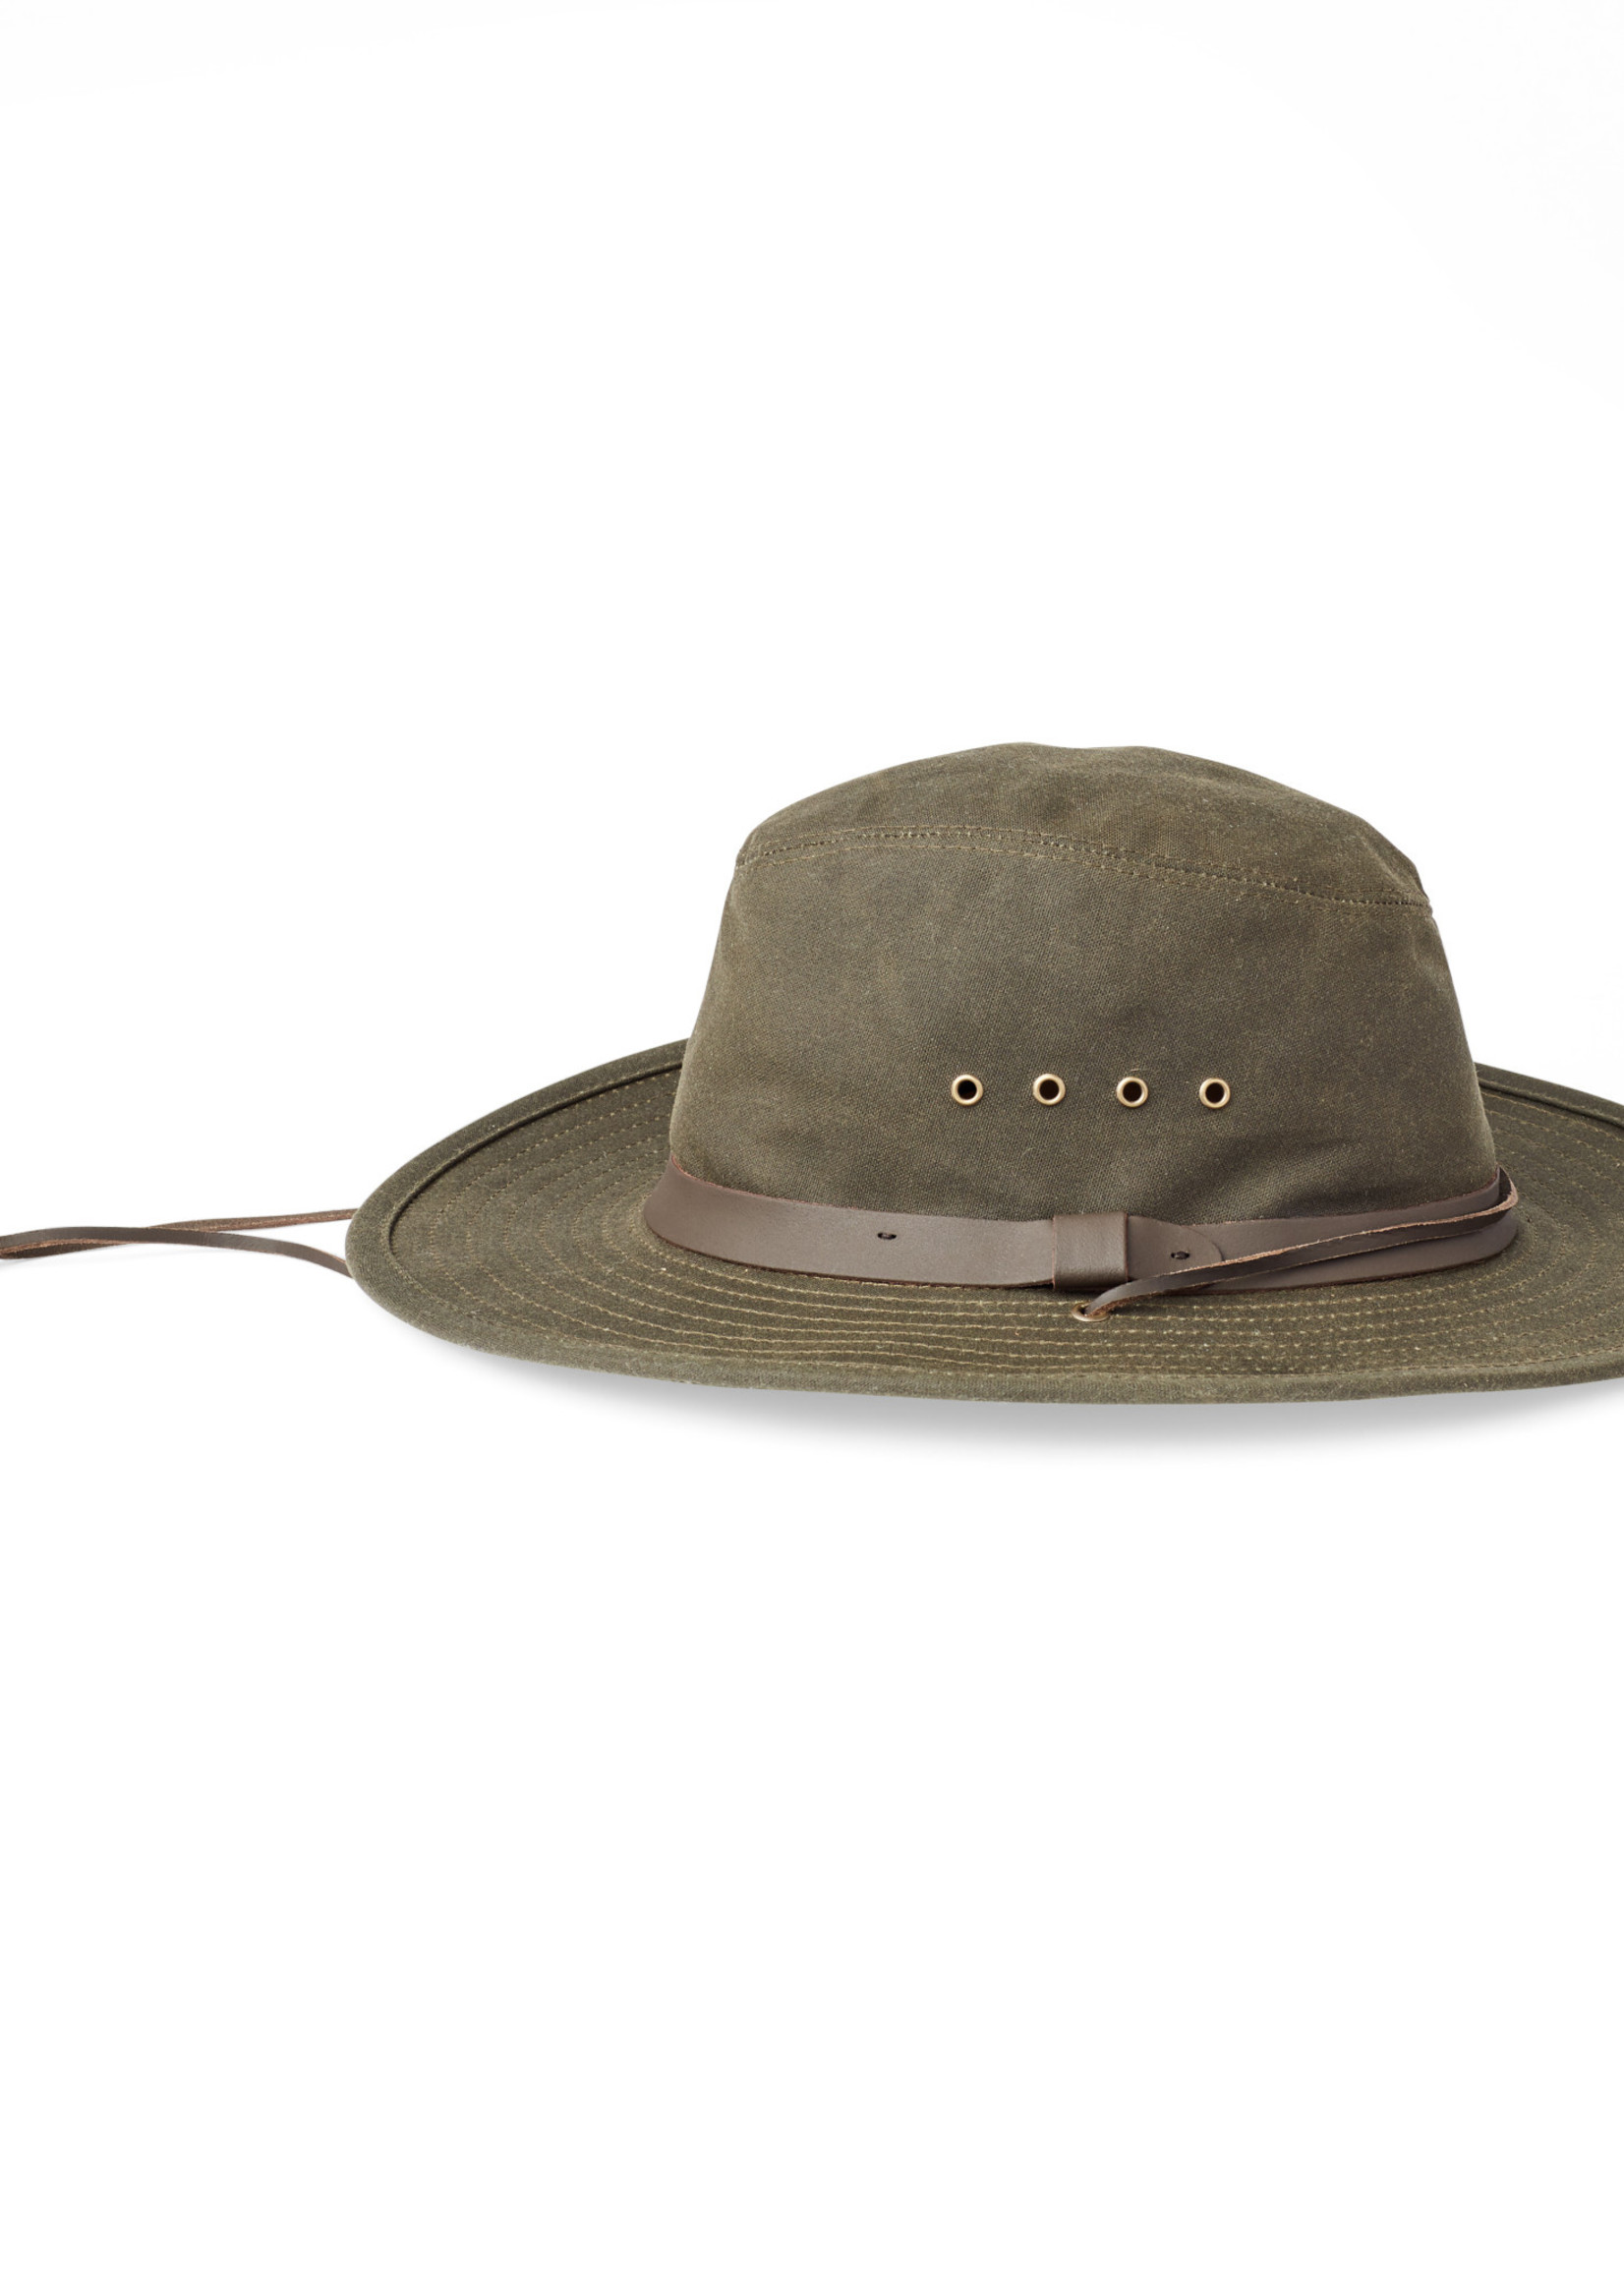 Filson Tin Bush Hat: OtterGreen